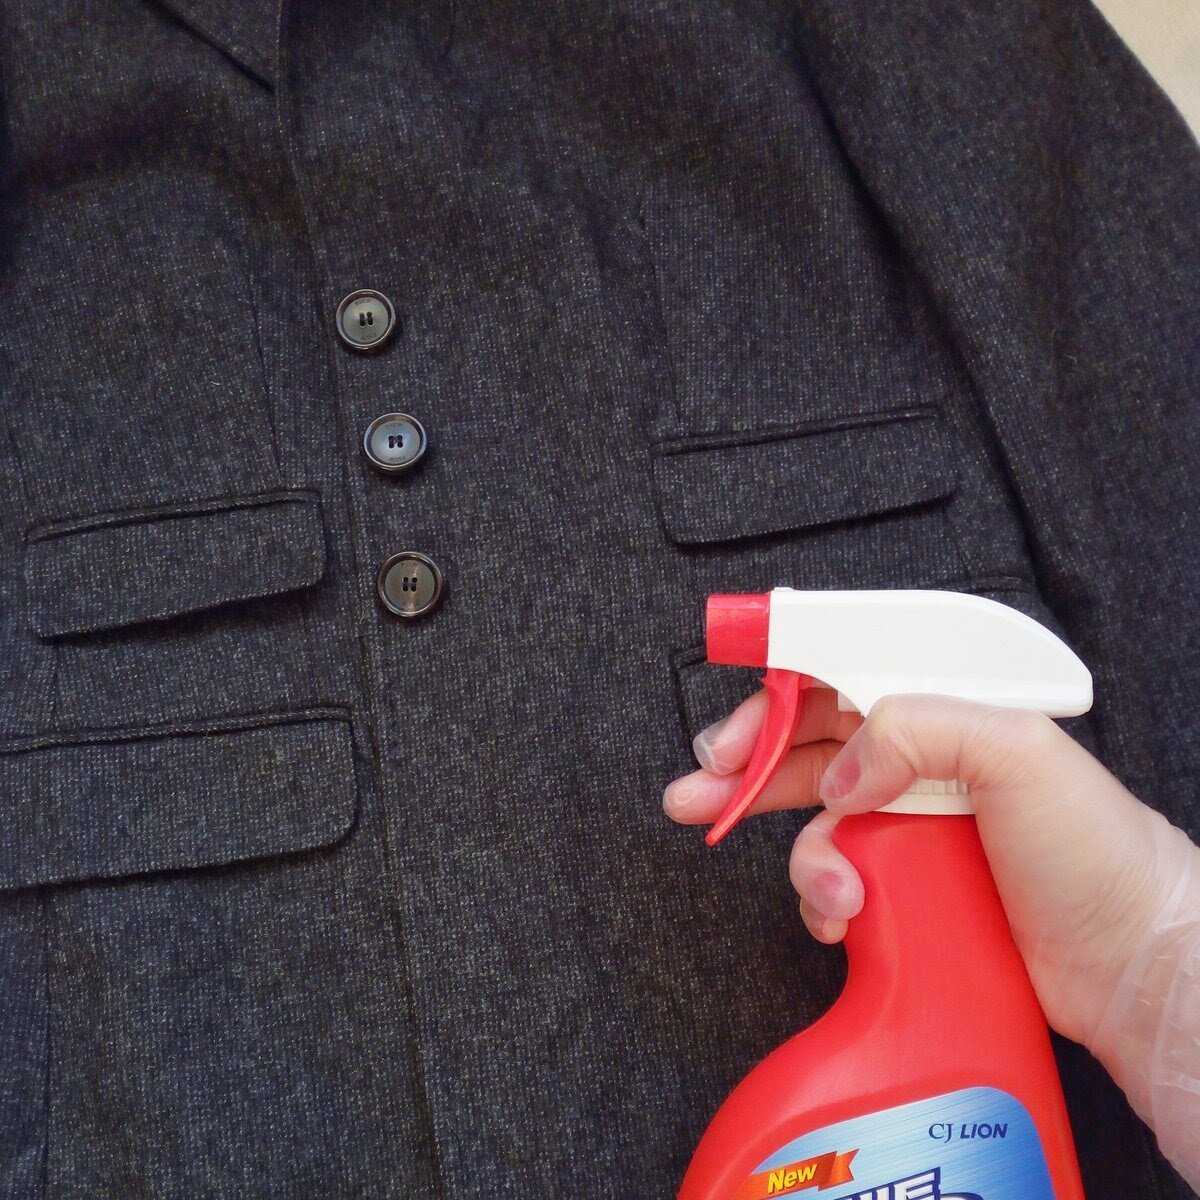 Как почистить шерстяное пальто в домашних условиях от грязи без стирки?